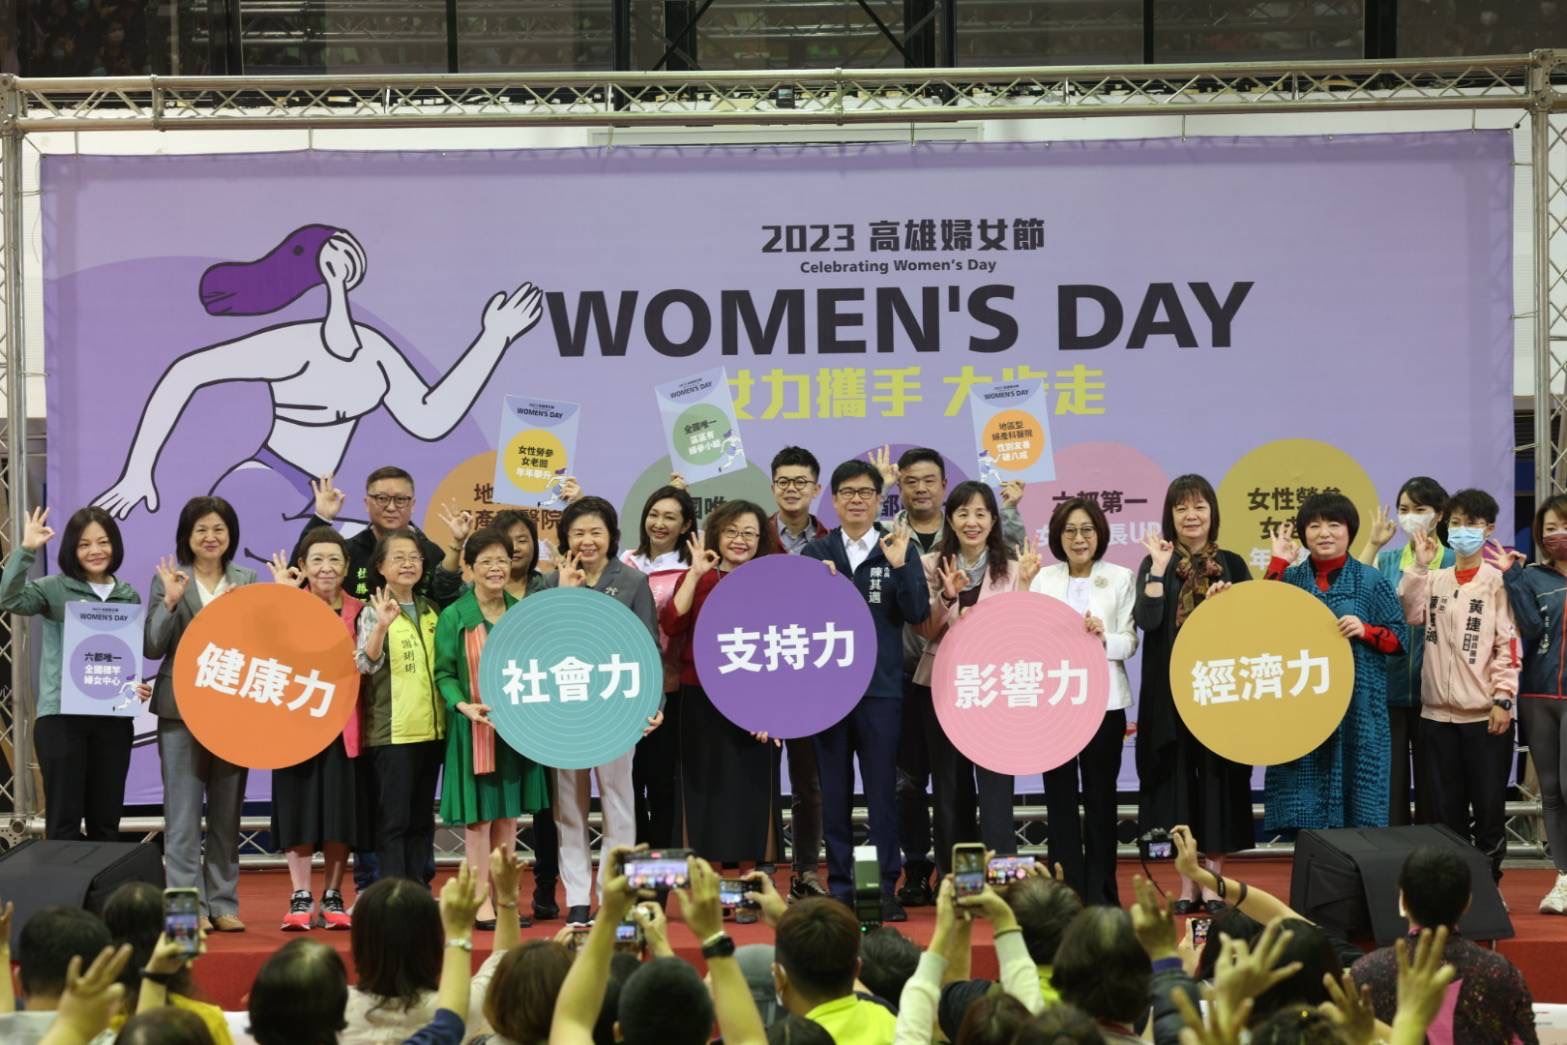 陳其邁秀5項女力成果   持續落實女力促進與平權